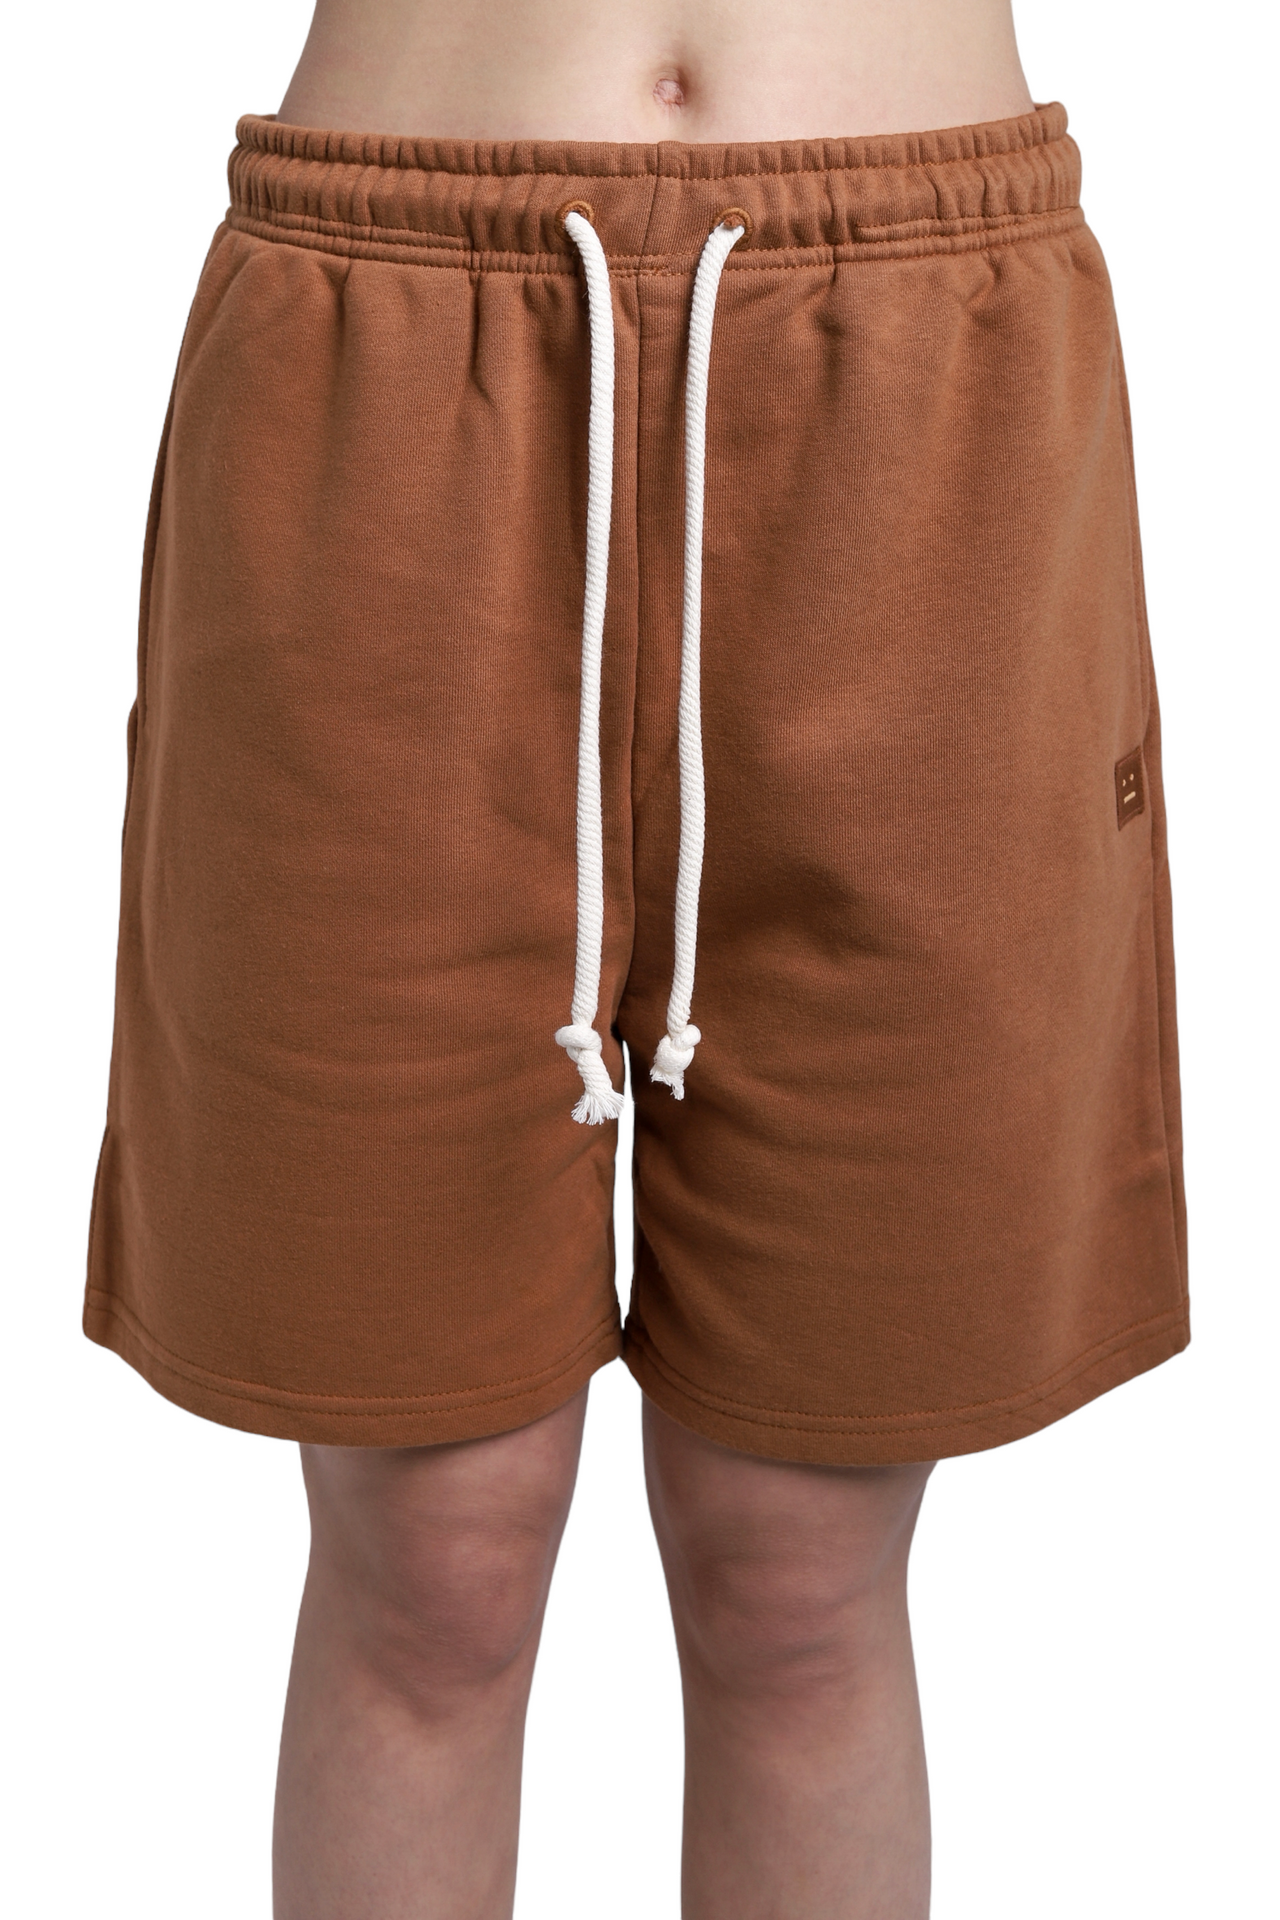 Acne Studios Fleece Shorts Cardinal Brown